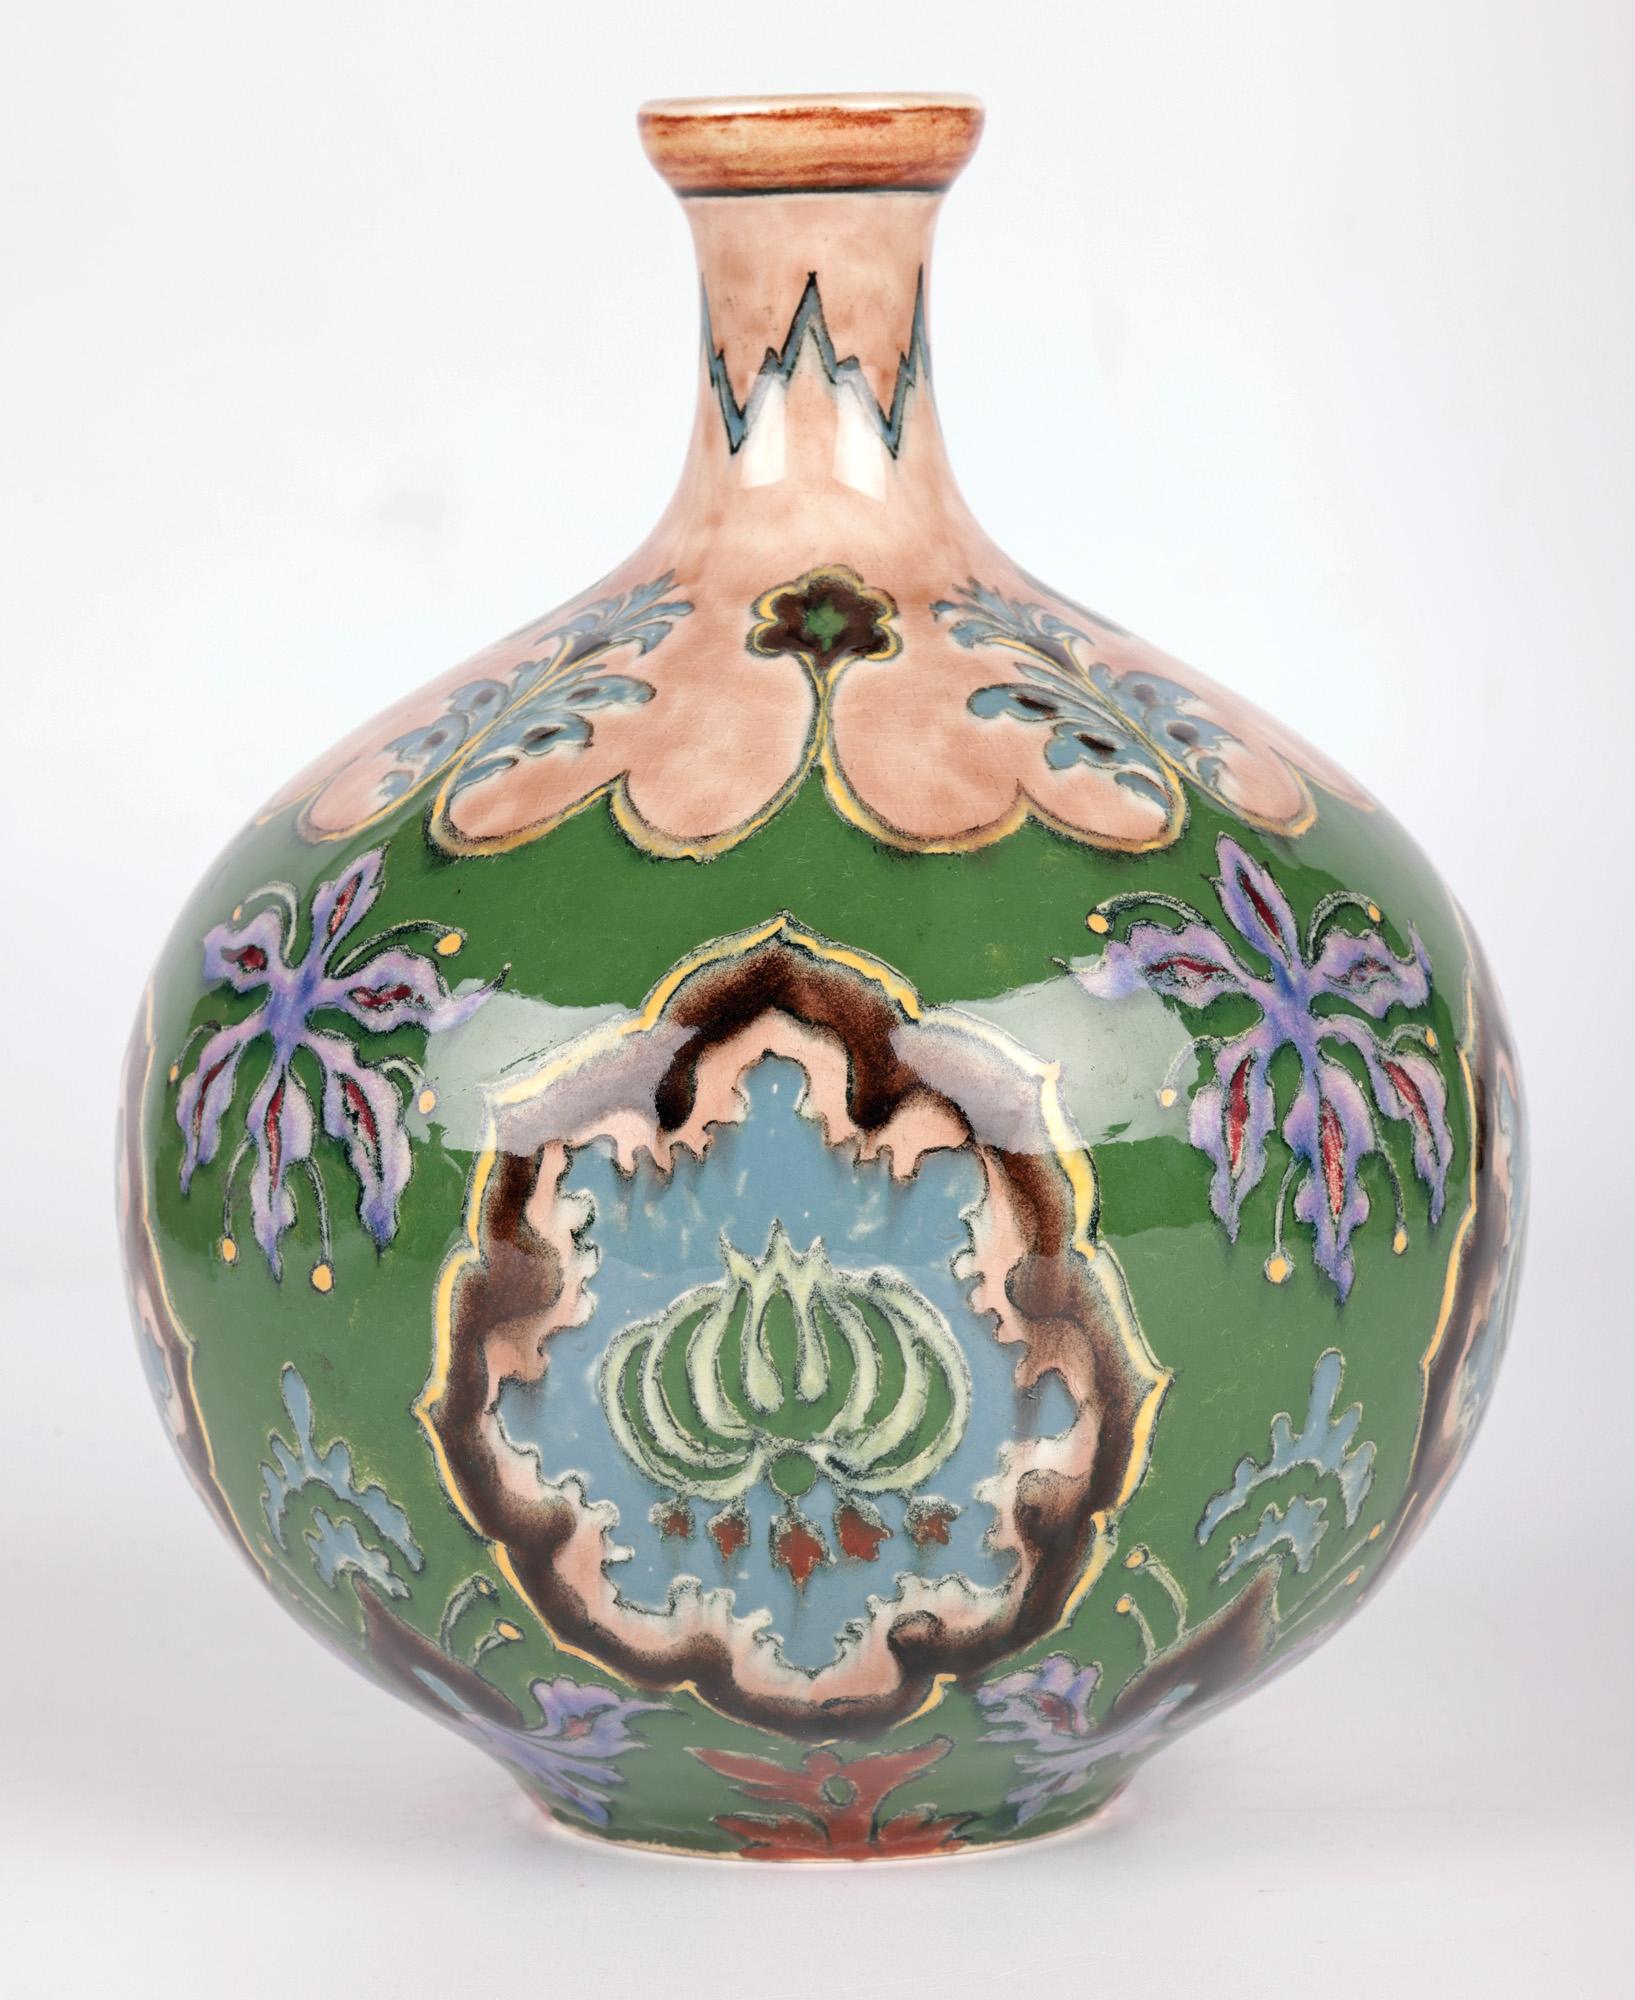 Une belle et étonnante paire de vases Art Nouveau allemands en poterie d'art peinte à la main avec des motifs floraux, fabriqués par la célèbre manufacture Royal Bonn et datant d'environ 1900. 
Royal Bonn ceramics a été fondé en 1836 par Franz Anton